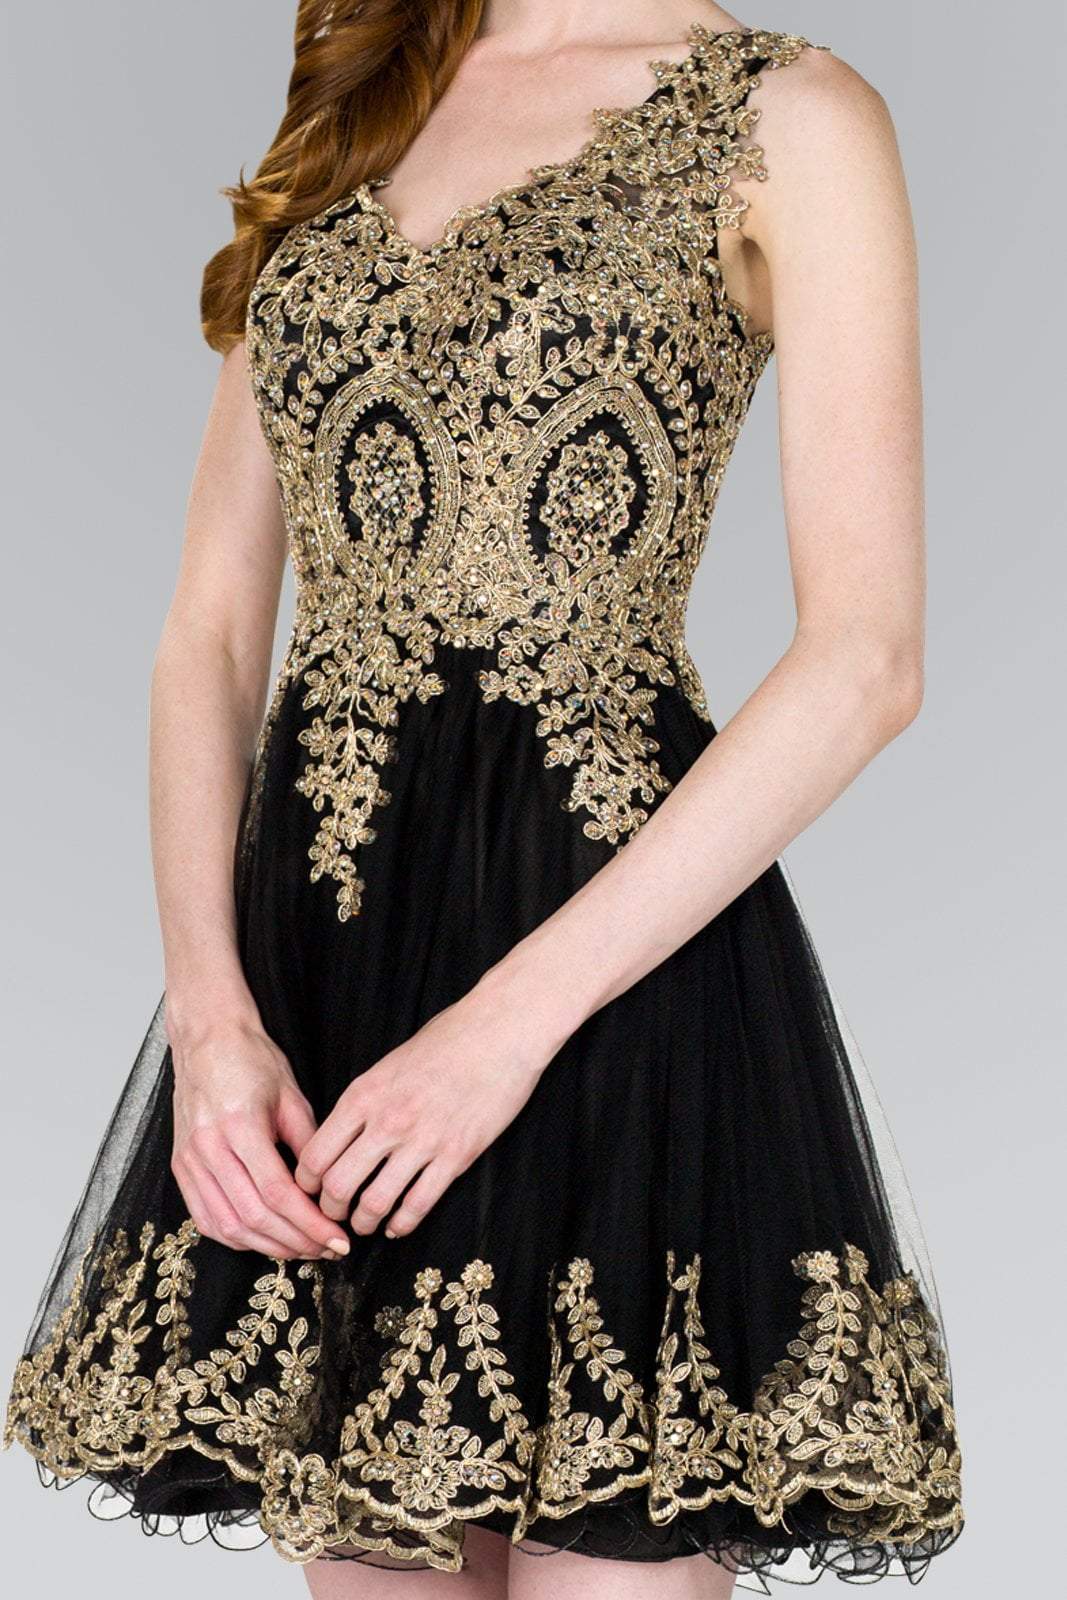 Elizabeth K - GS2403 Gold Lace Applique Tulle Cocktail Dress Bridesmaid Dresses